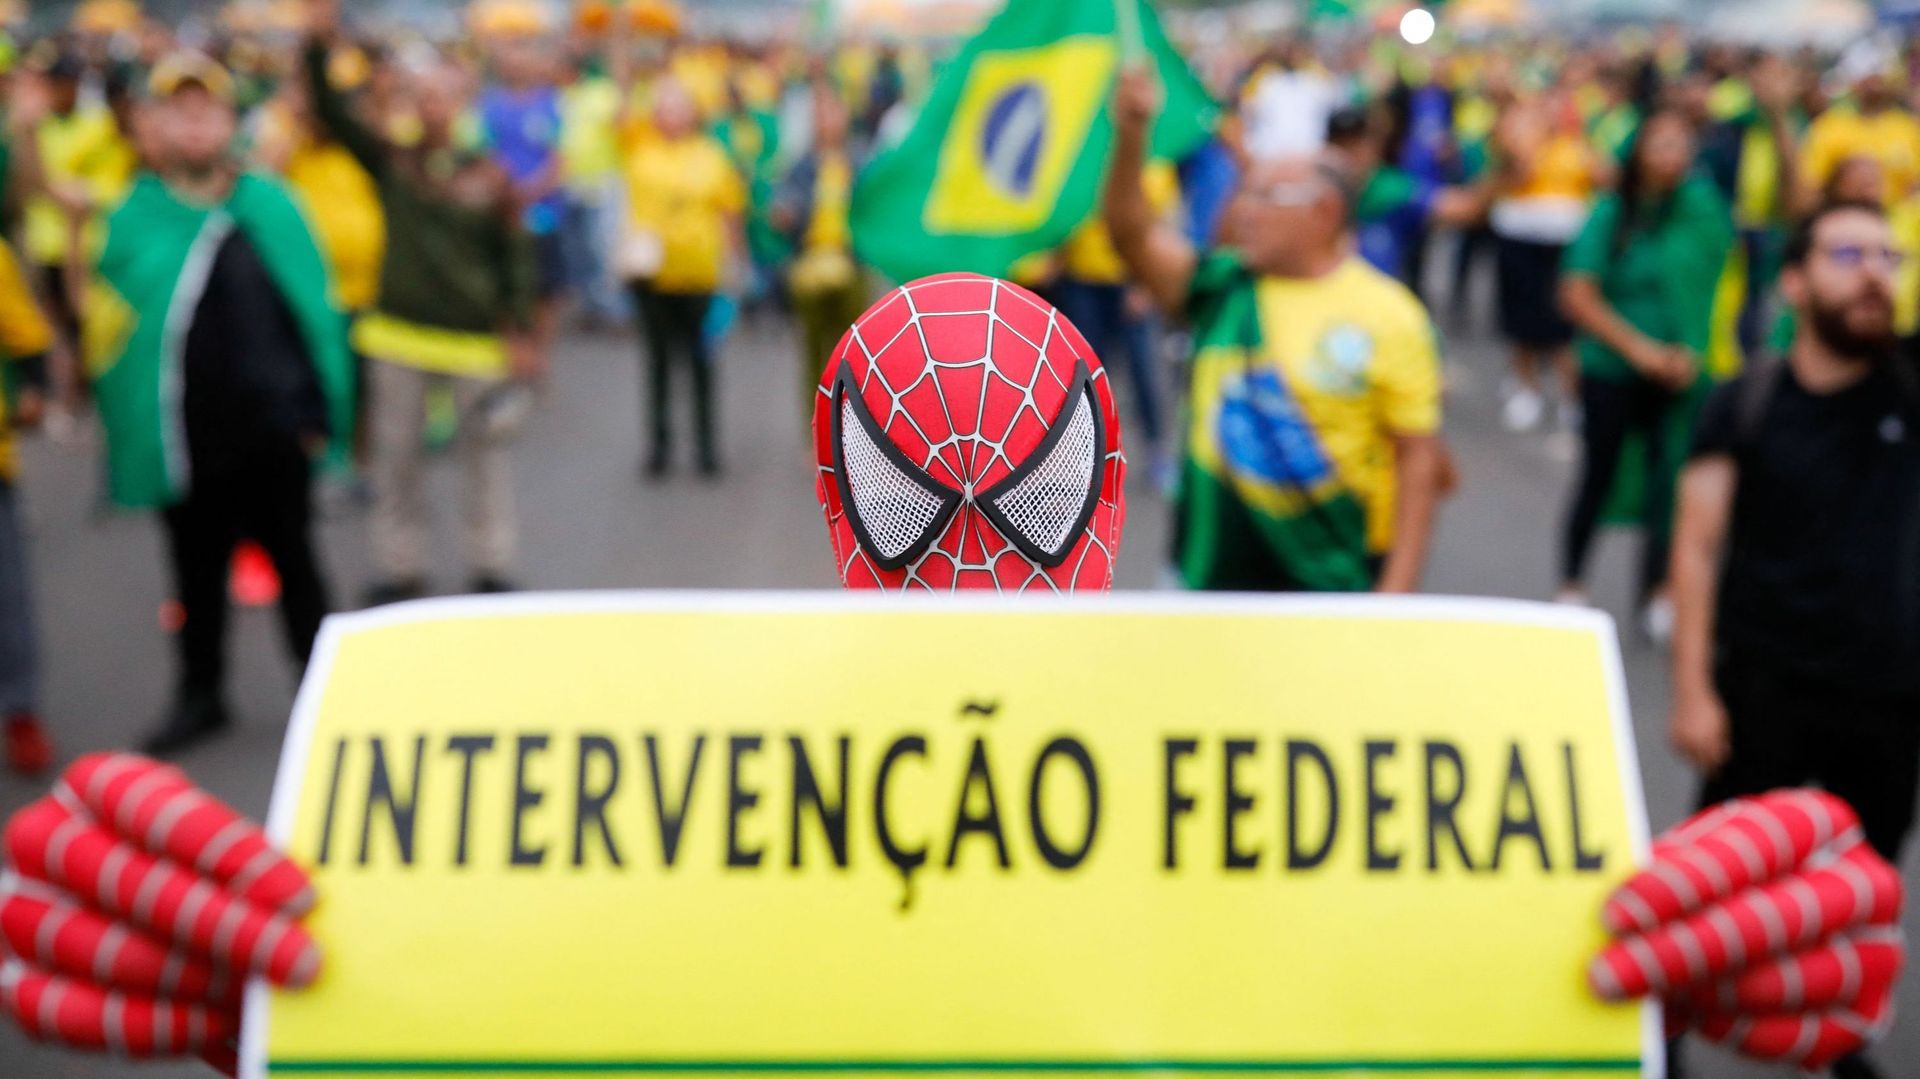 Un partisan du président brésilien Jair Bolsonaro porte un costume de Spider-Man alors qu'il participe à une manifestation pour demander une intervention fédérale devant le siège de l'armée à Brasilia, le 2 novembre 2022.